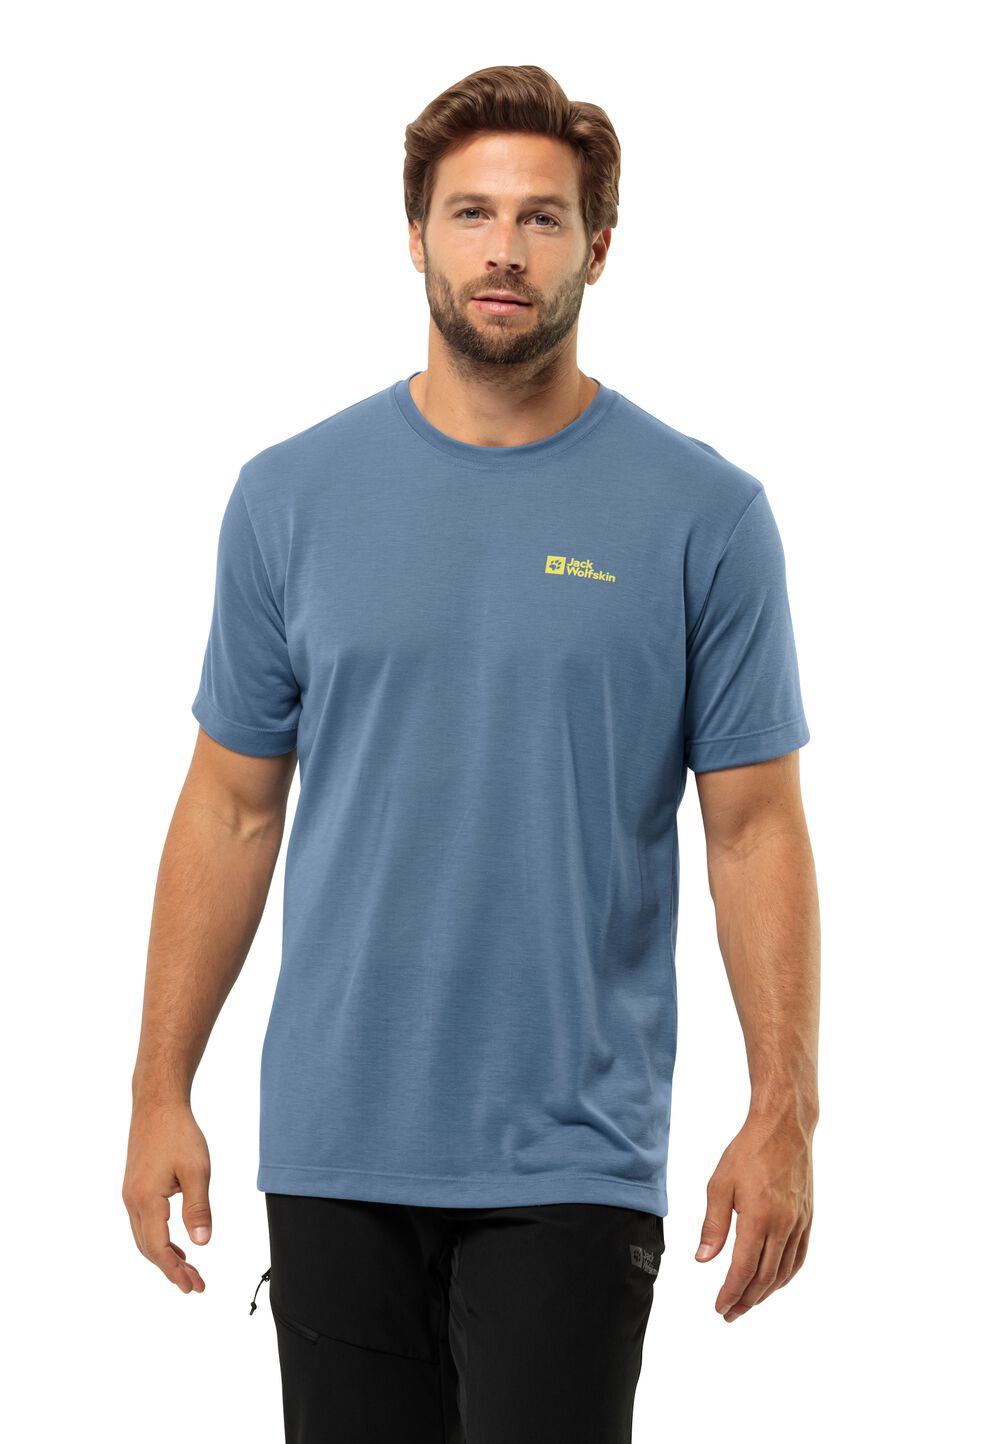 Jack Wolfskin Vonnan S S T-Shirt Men Functioneel shirt Heren L elemental blue elemental blue